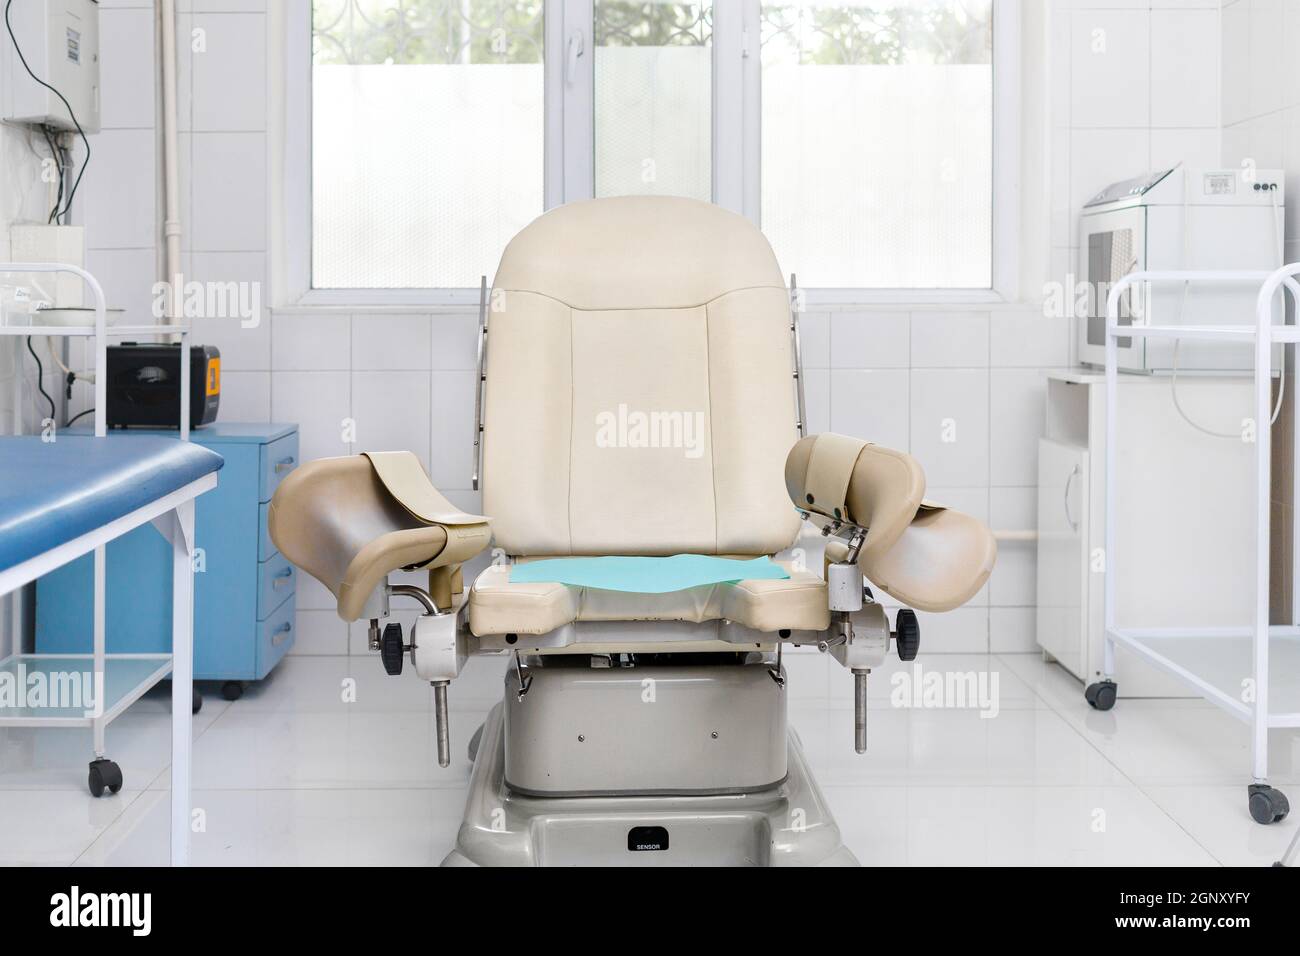 Gynecologist chair -Fotos und -Bildmaterial in hoher Auflösung - Seite 3 -  Alamy